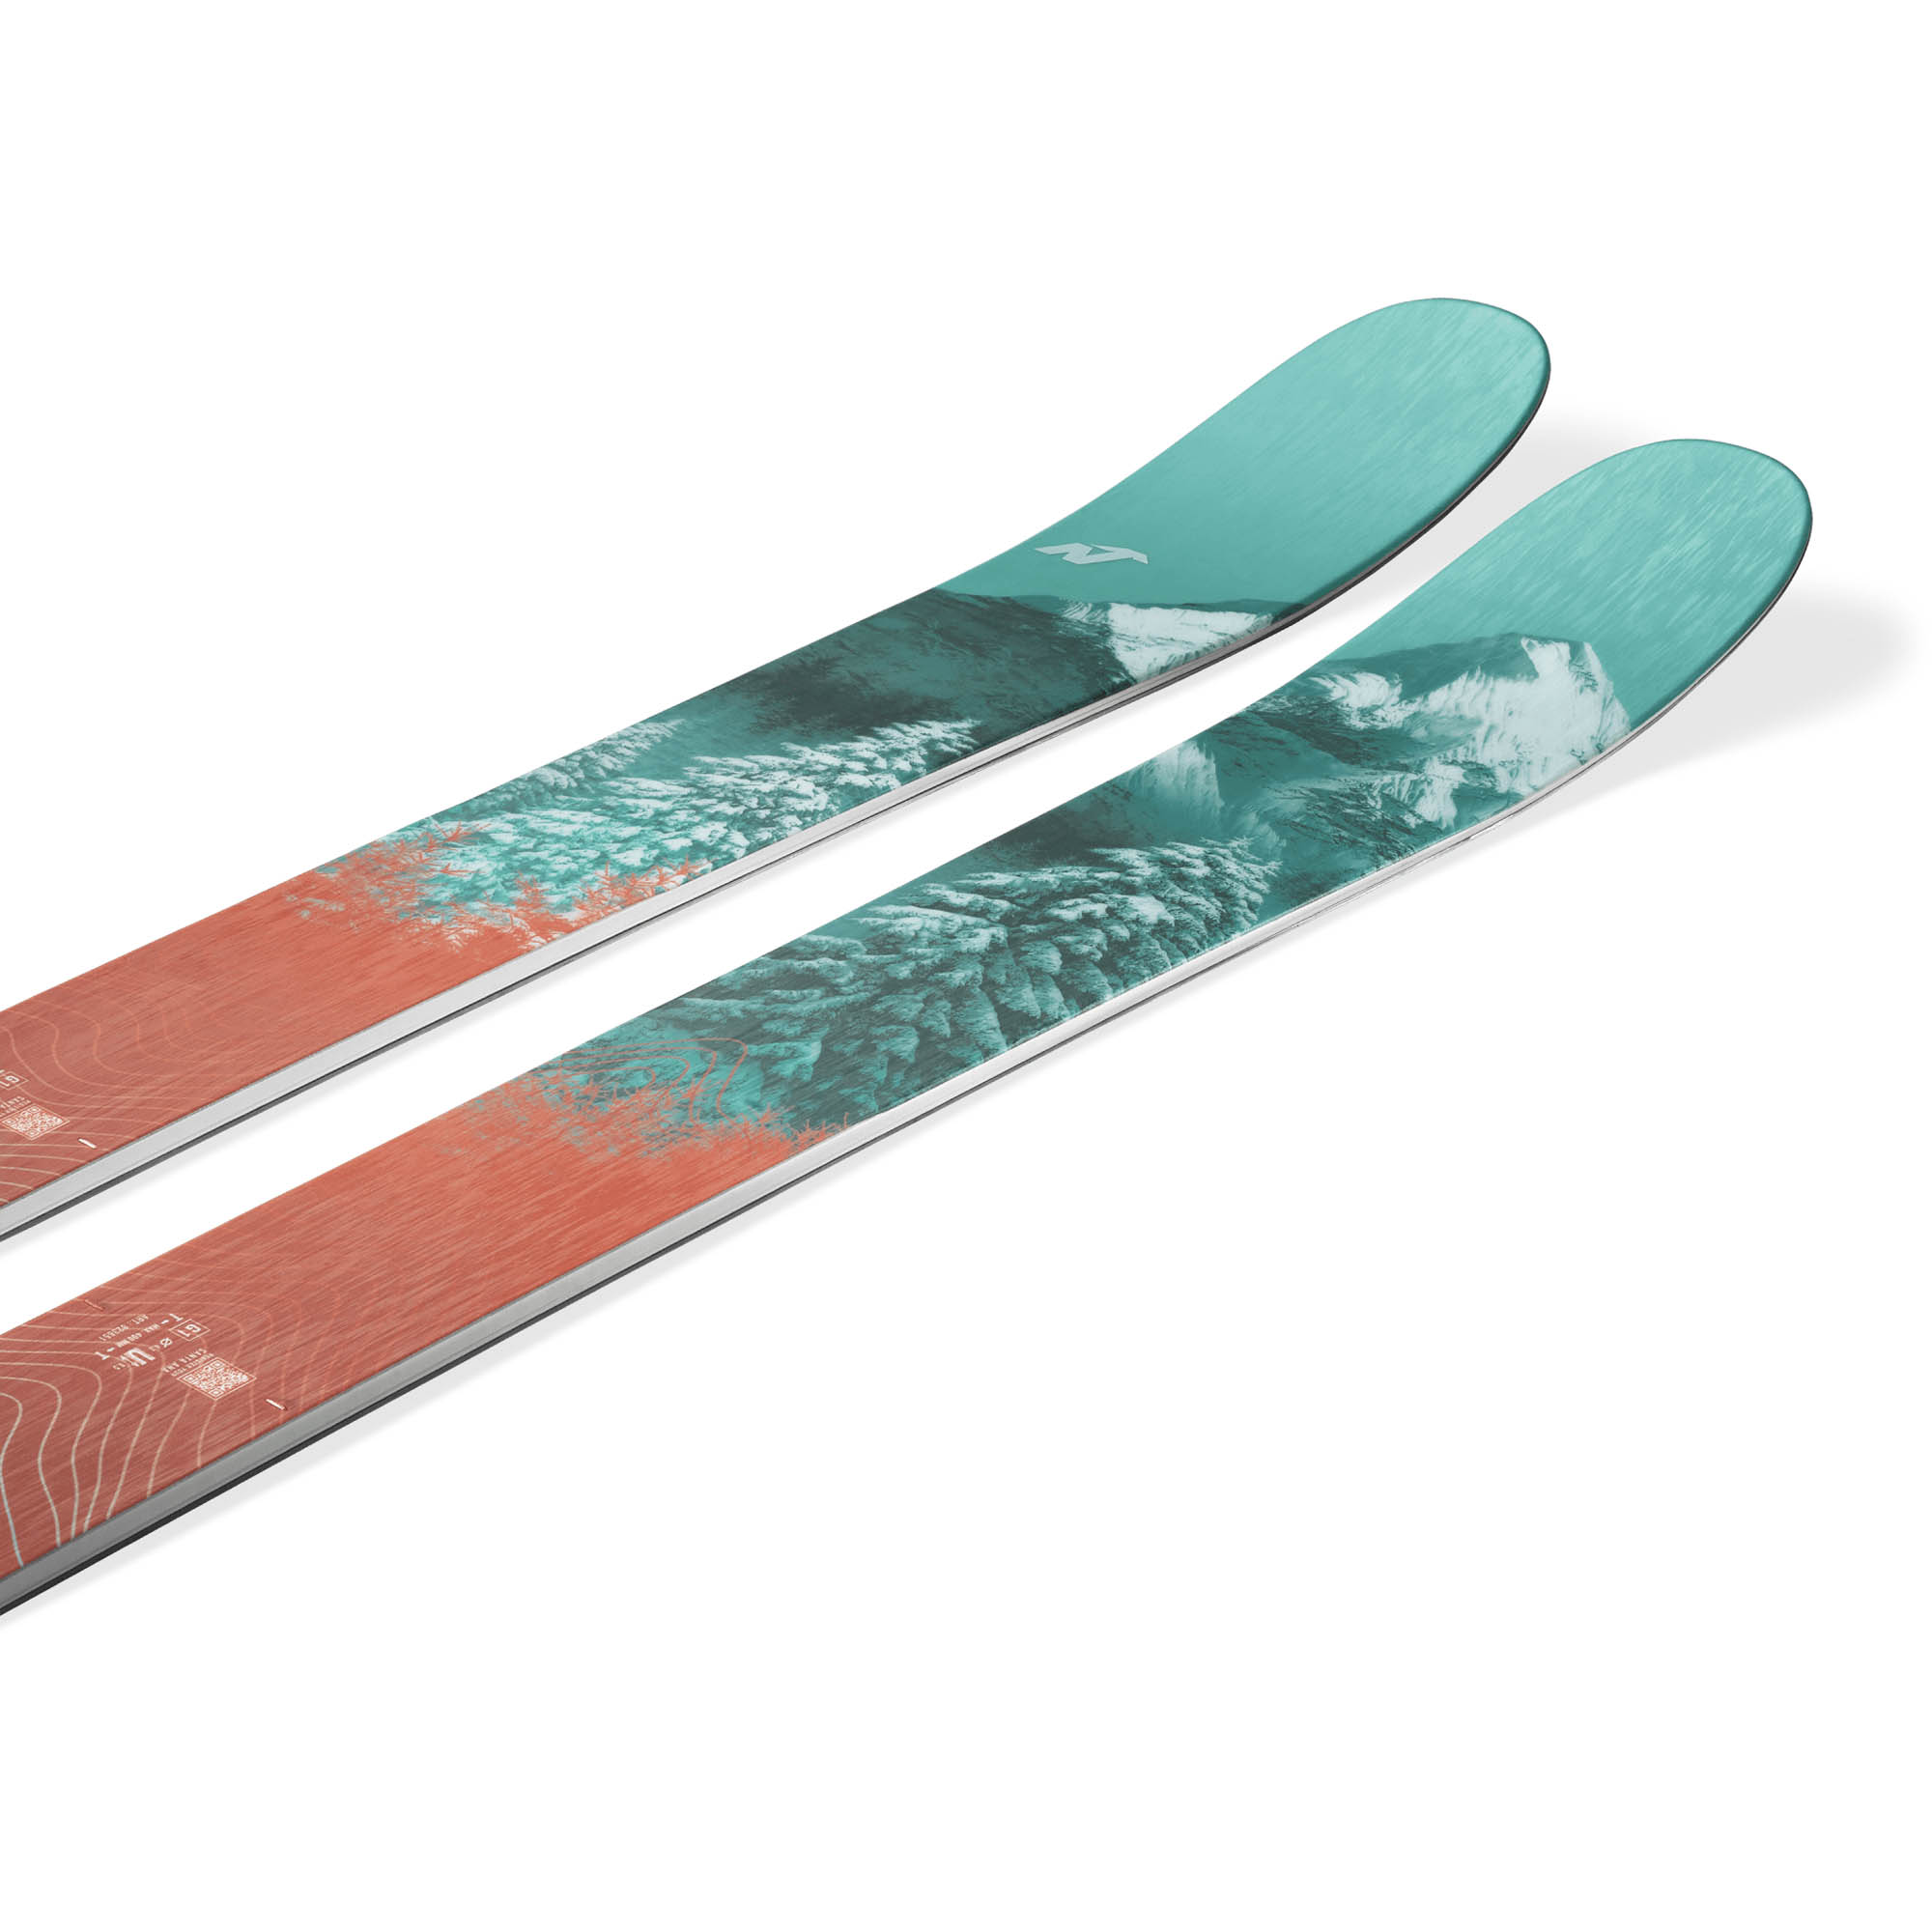 Nordica Santa Ana 110 Free Women's Skis